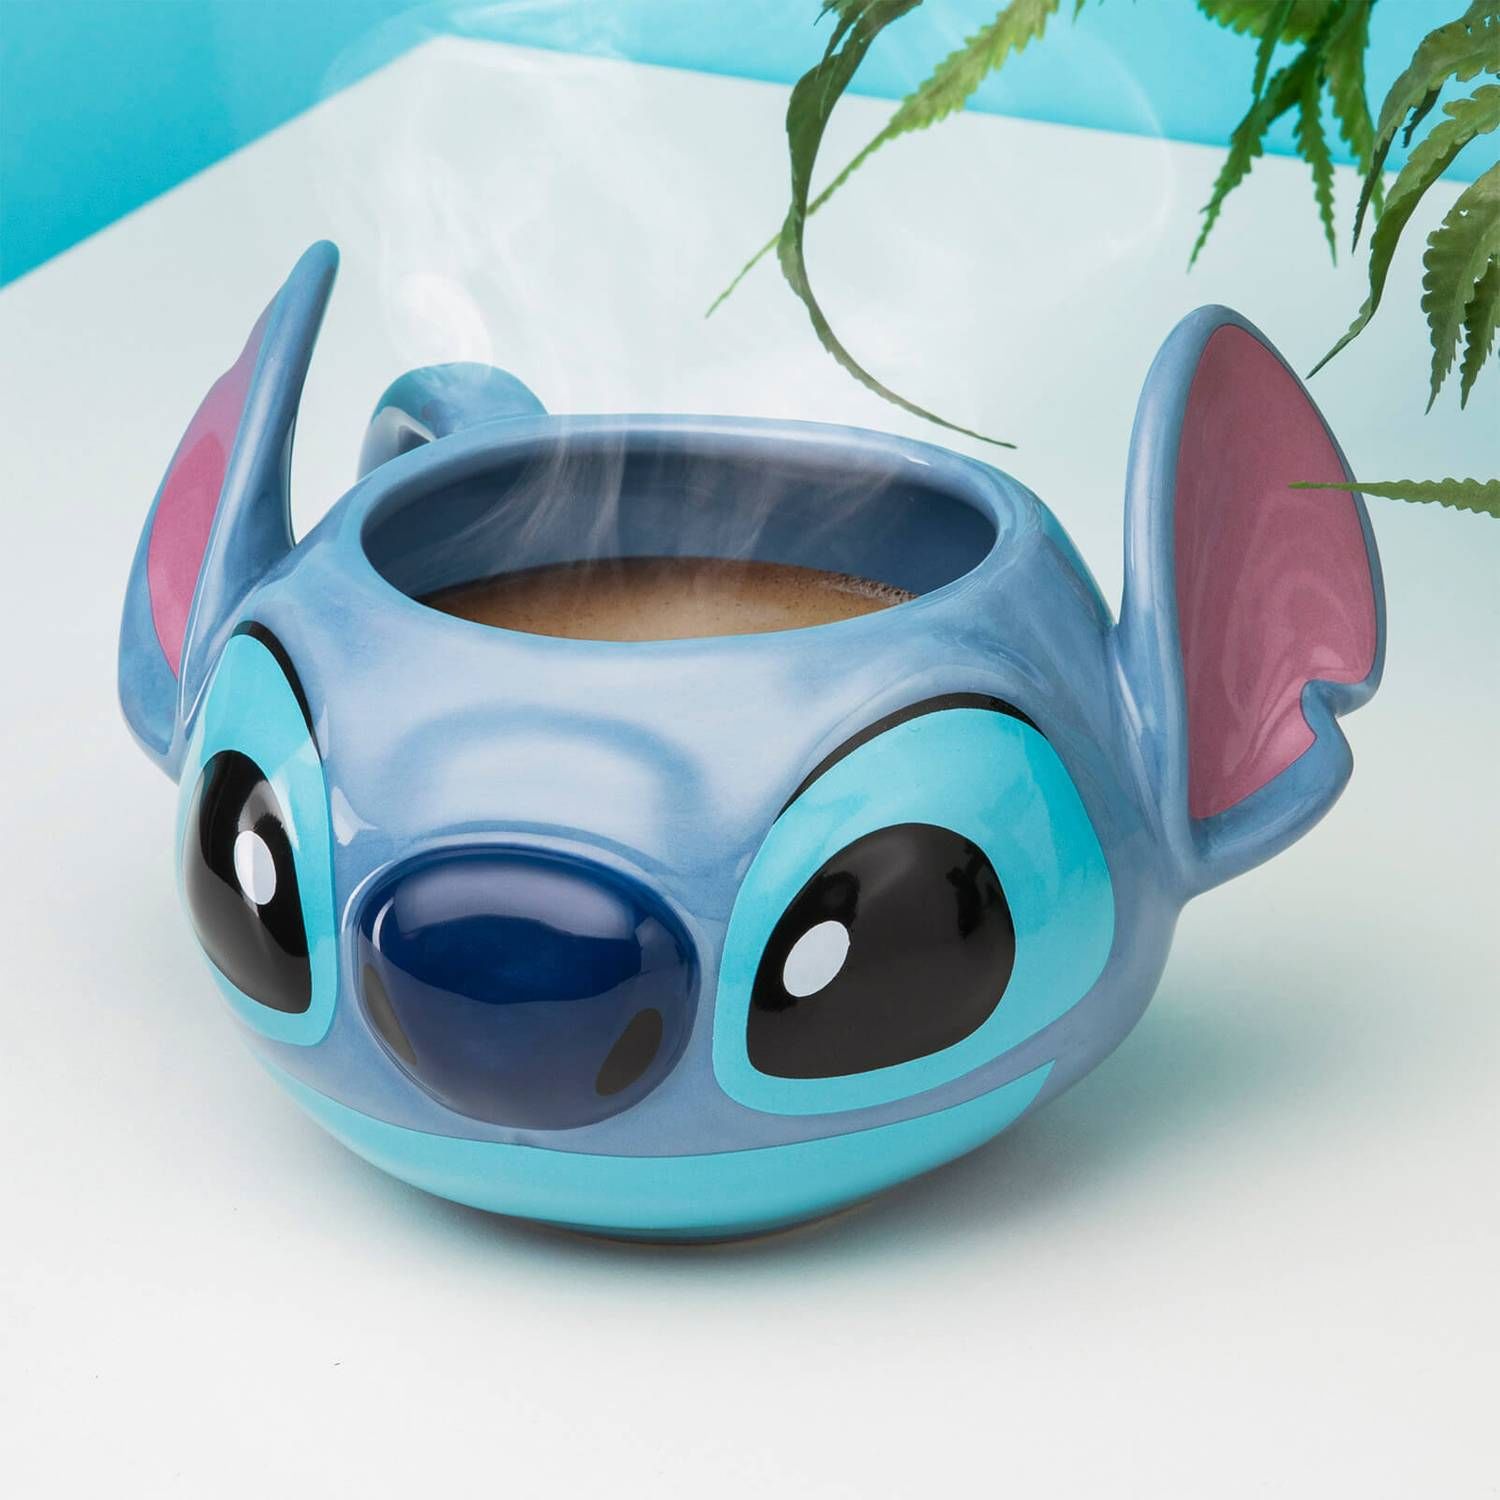 Disney - Lilo et Stitch : Tapis de souris Stitch